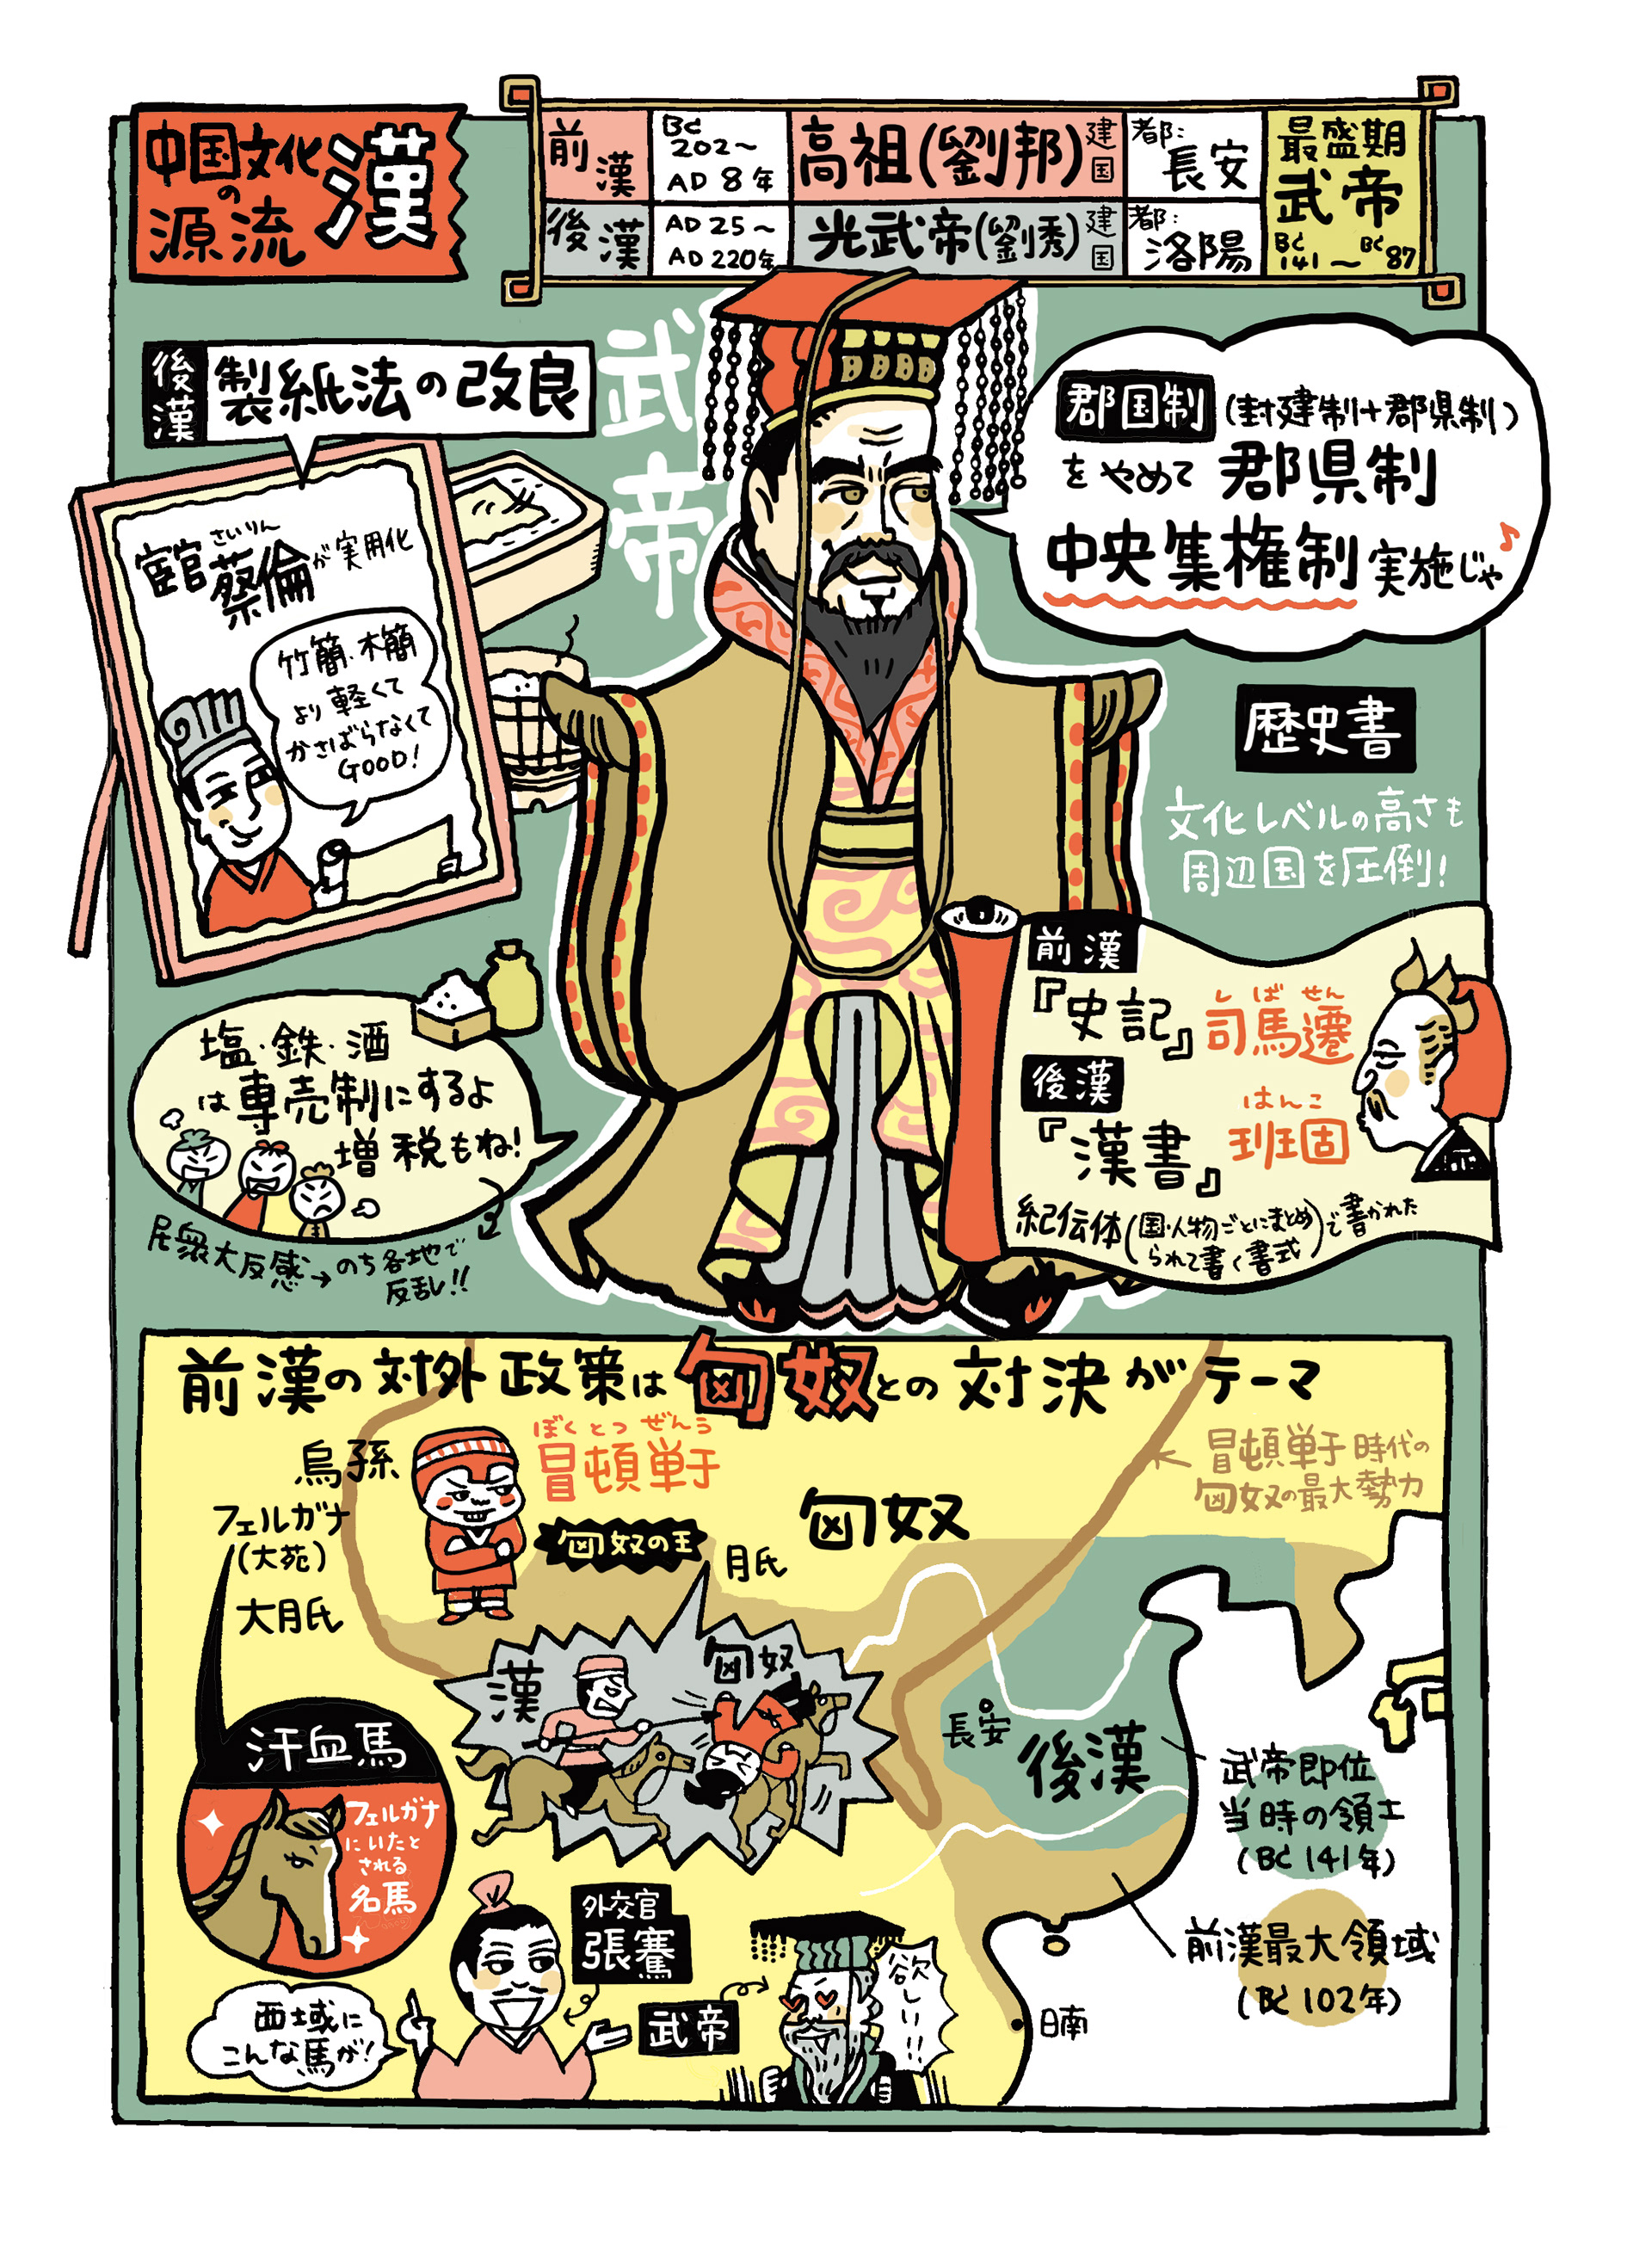 Chinatsu Asakura 世界史